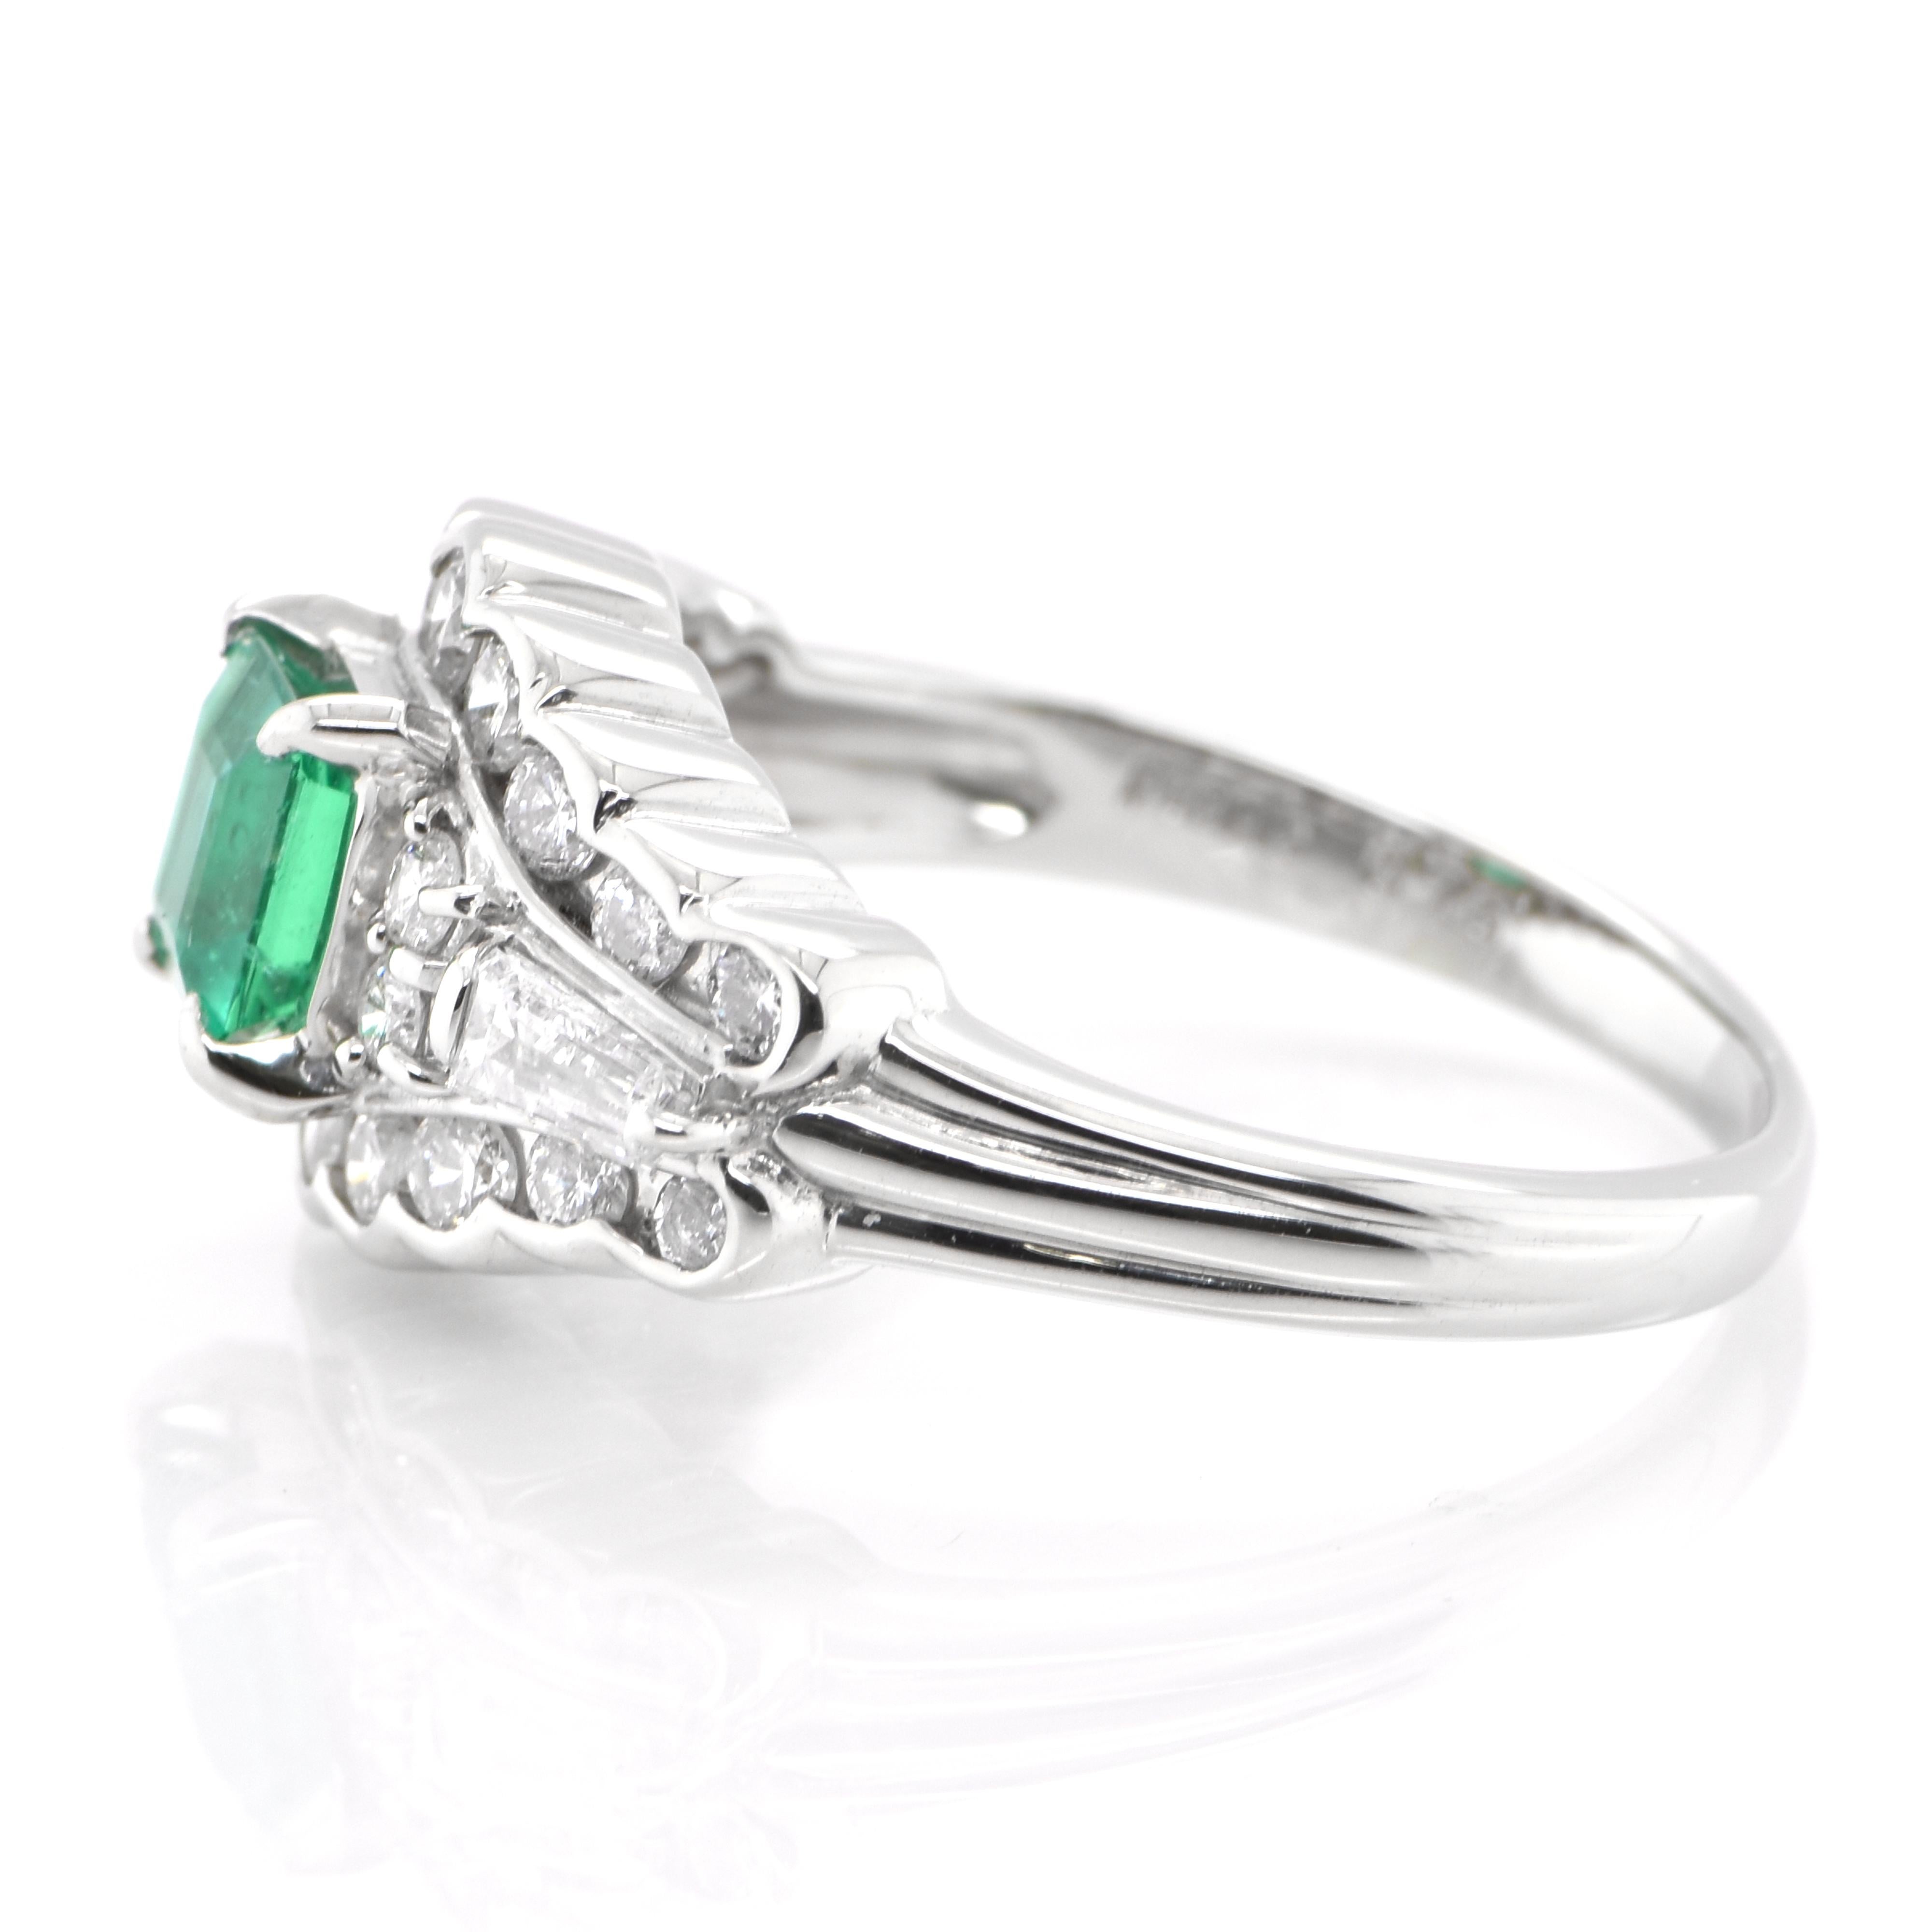 Emerald Cut 0.76 Carat Natural Emerald and Diamond Antique Ring Set in Platinum